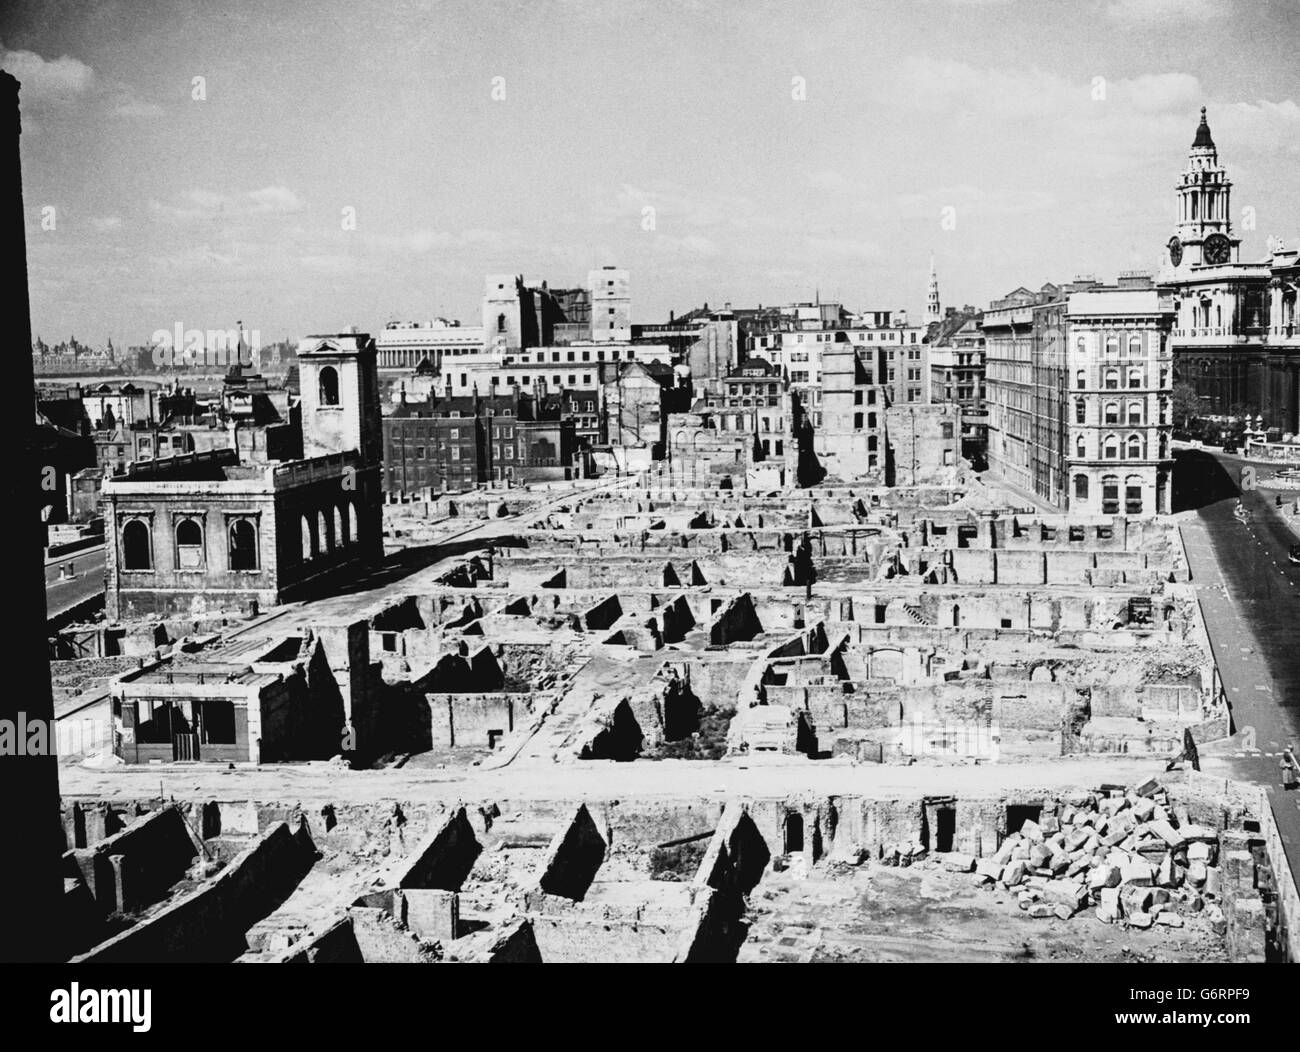 Die Arbeiten beginnen, die Schäden zu reparieren, die durch die Luftwaffe Bombenangriffe auf die Stadt London verursacht wurden, mit St. Paul's Cathedral, London, auf der rechten Seite. Stockfoto